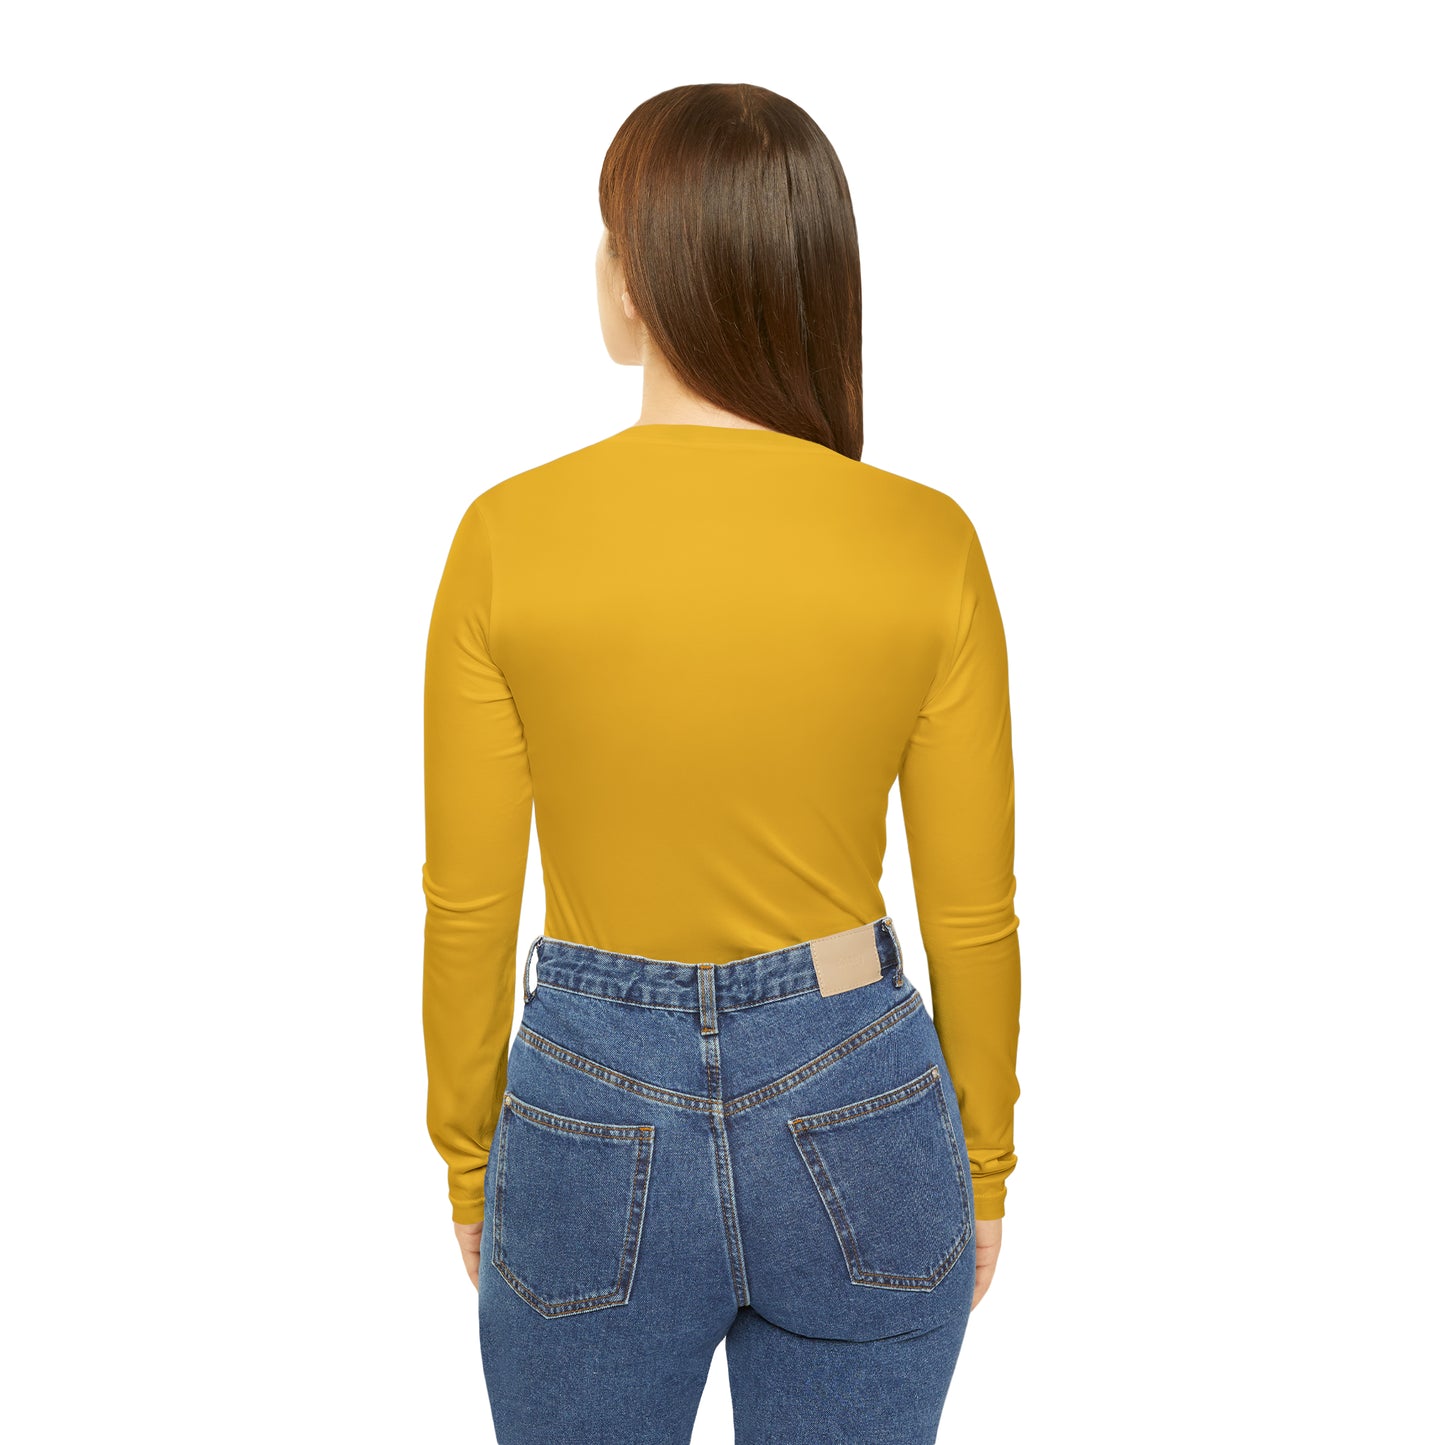 Ugly Neighbor II Women's Long Sleeve V-neck Shirt - Yellow